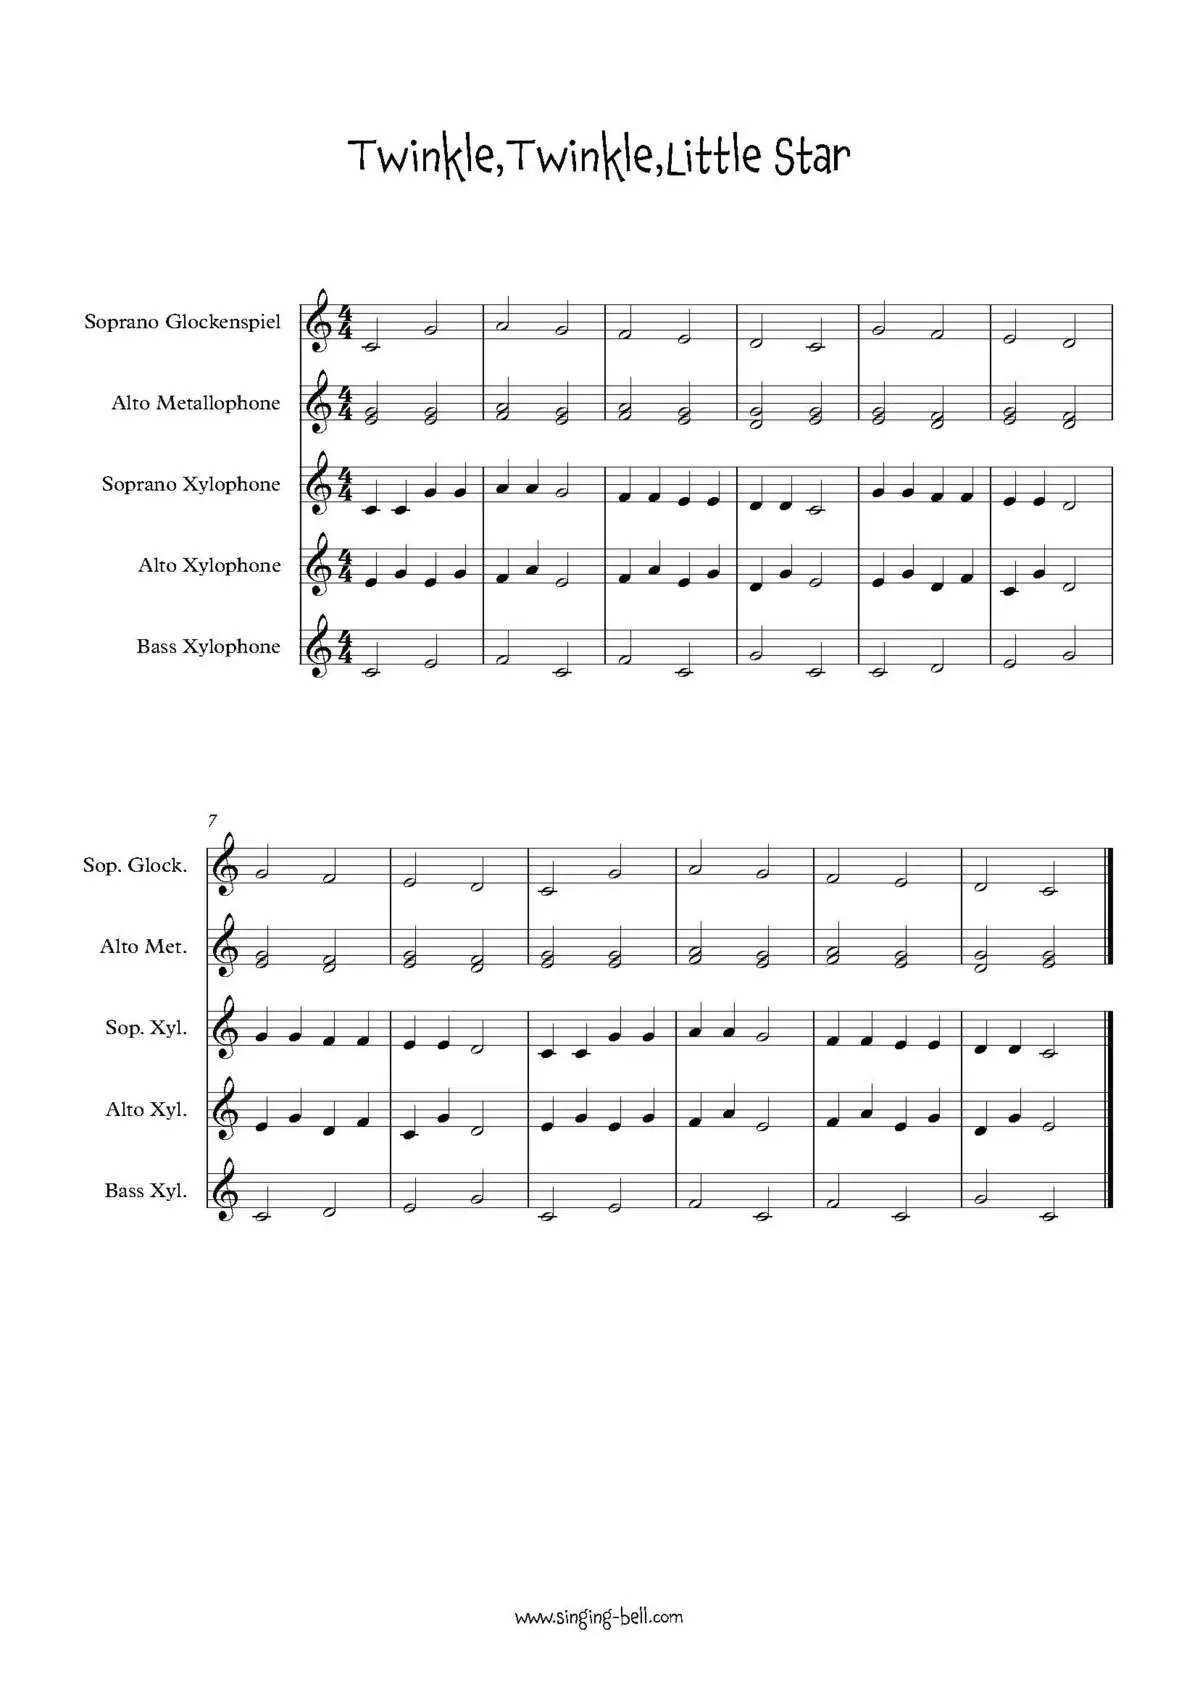 Twinkle-Twinkle-Little-Star-orff-arrangement-sheet-music-pdf-singing-bell